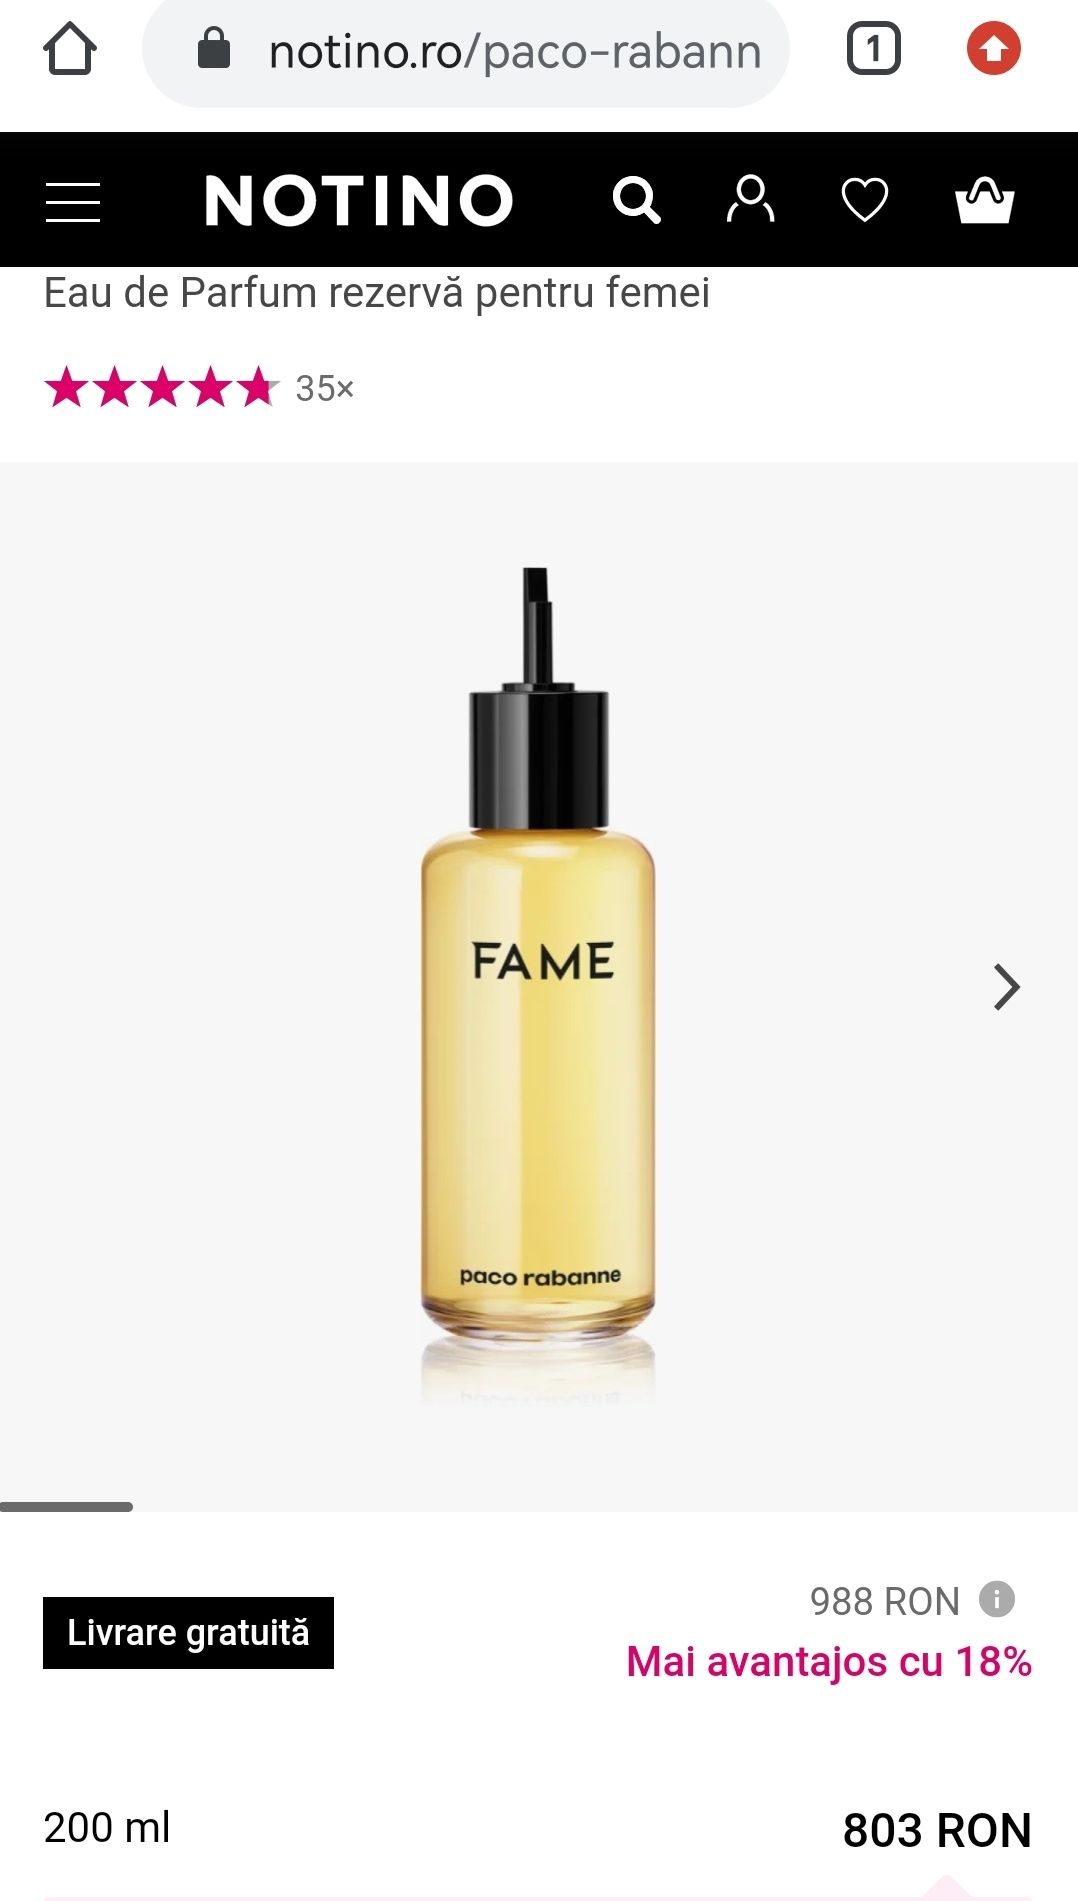 Paco Rabanne Fame Parfum 200 ml
Fame 
Eau de Parfum rezervă pentru fem